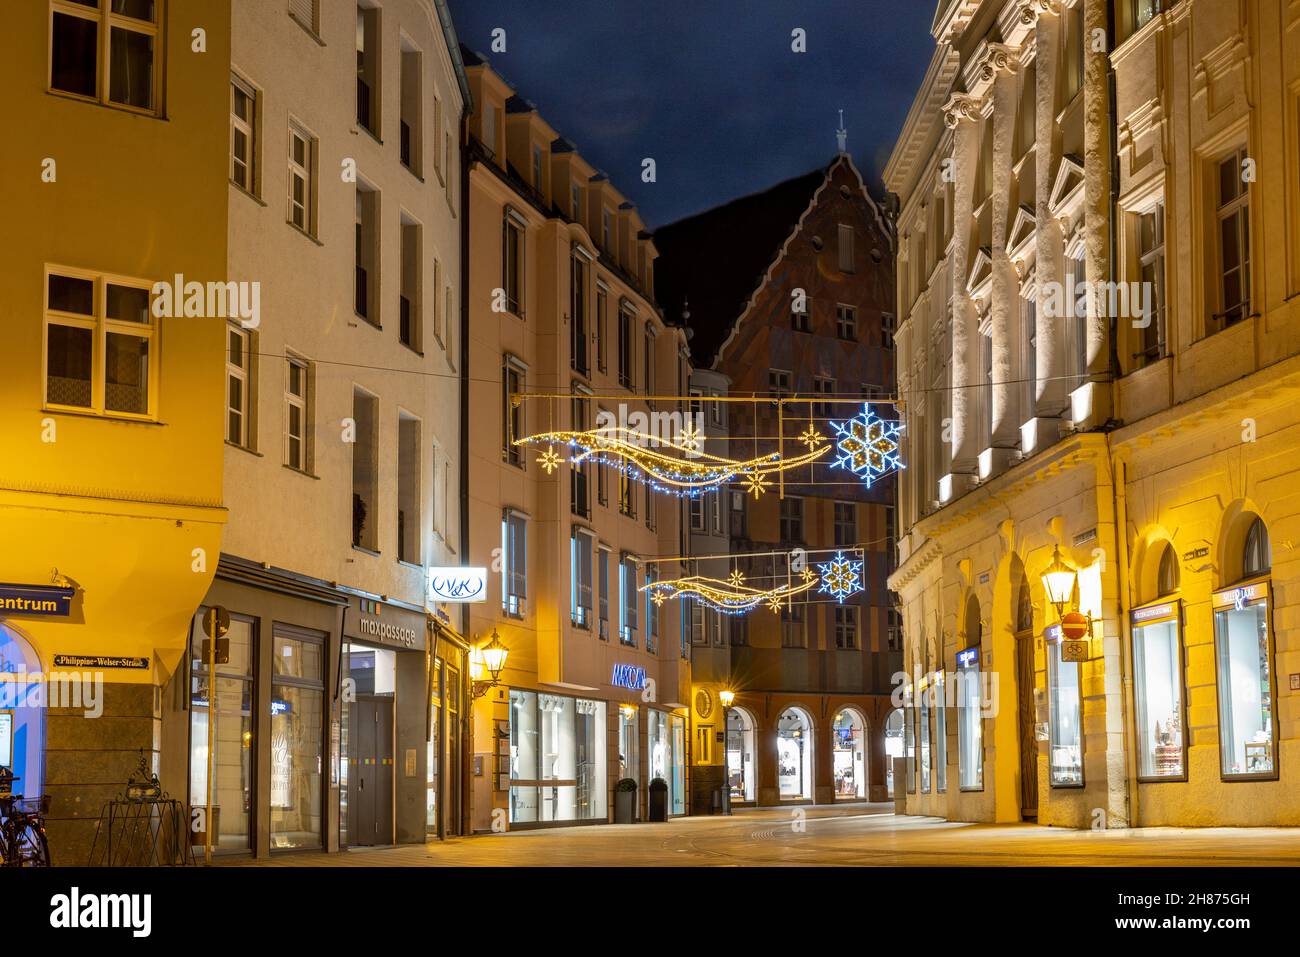 Augsbourg, Allemagne - 27 novembre 2021 : les rues de la vieille ville d'Augsbourg, en Bavière, sont décorées pour les fêtes de fin d'année.Les lumières de Noël sont installées au-dessus de la rade Banque D'Images